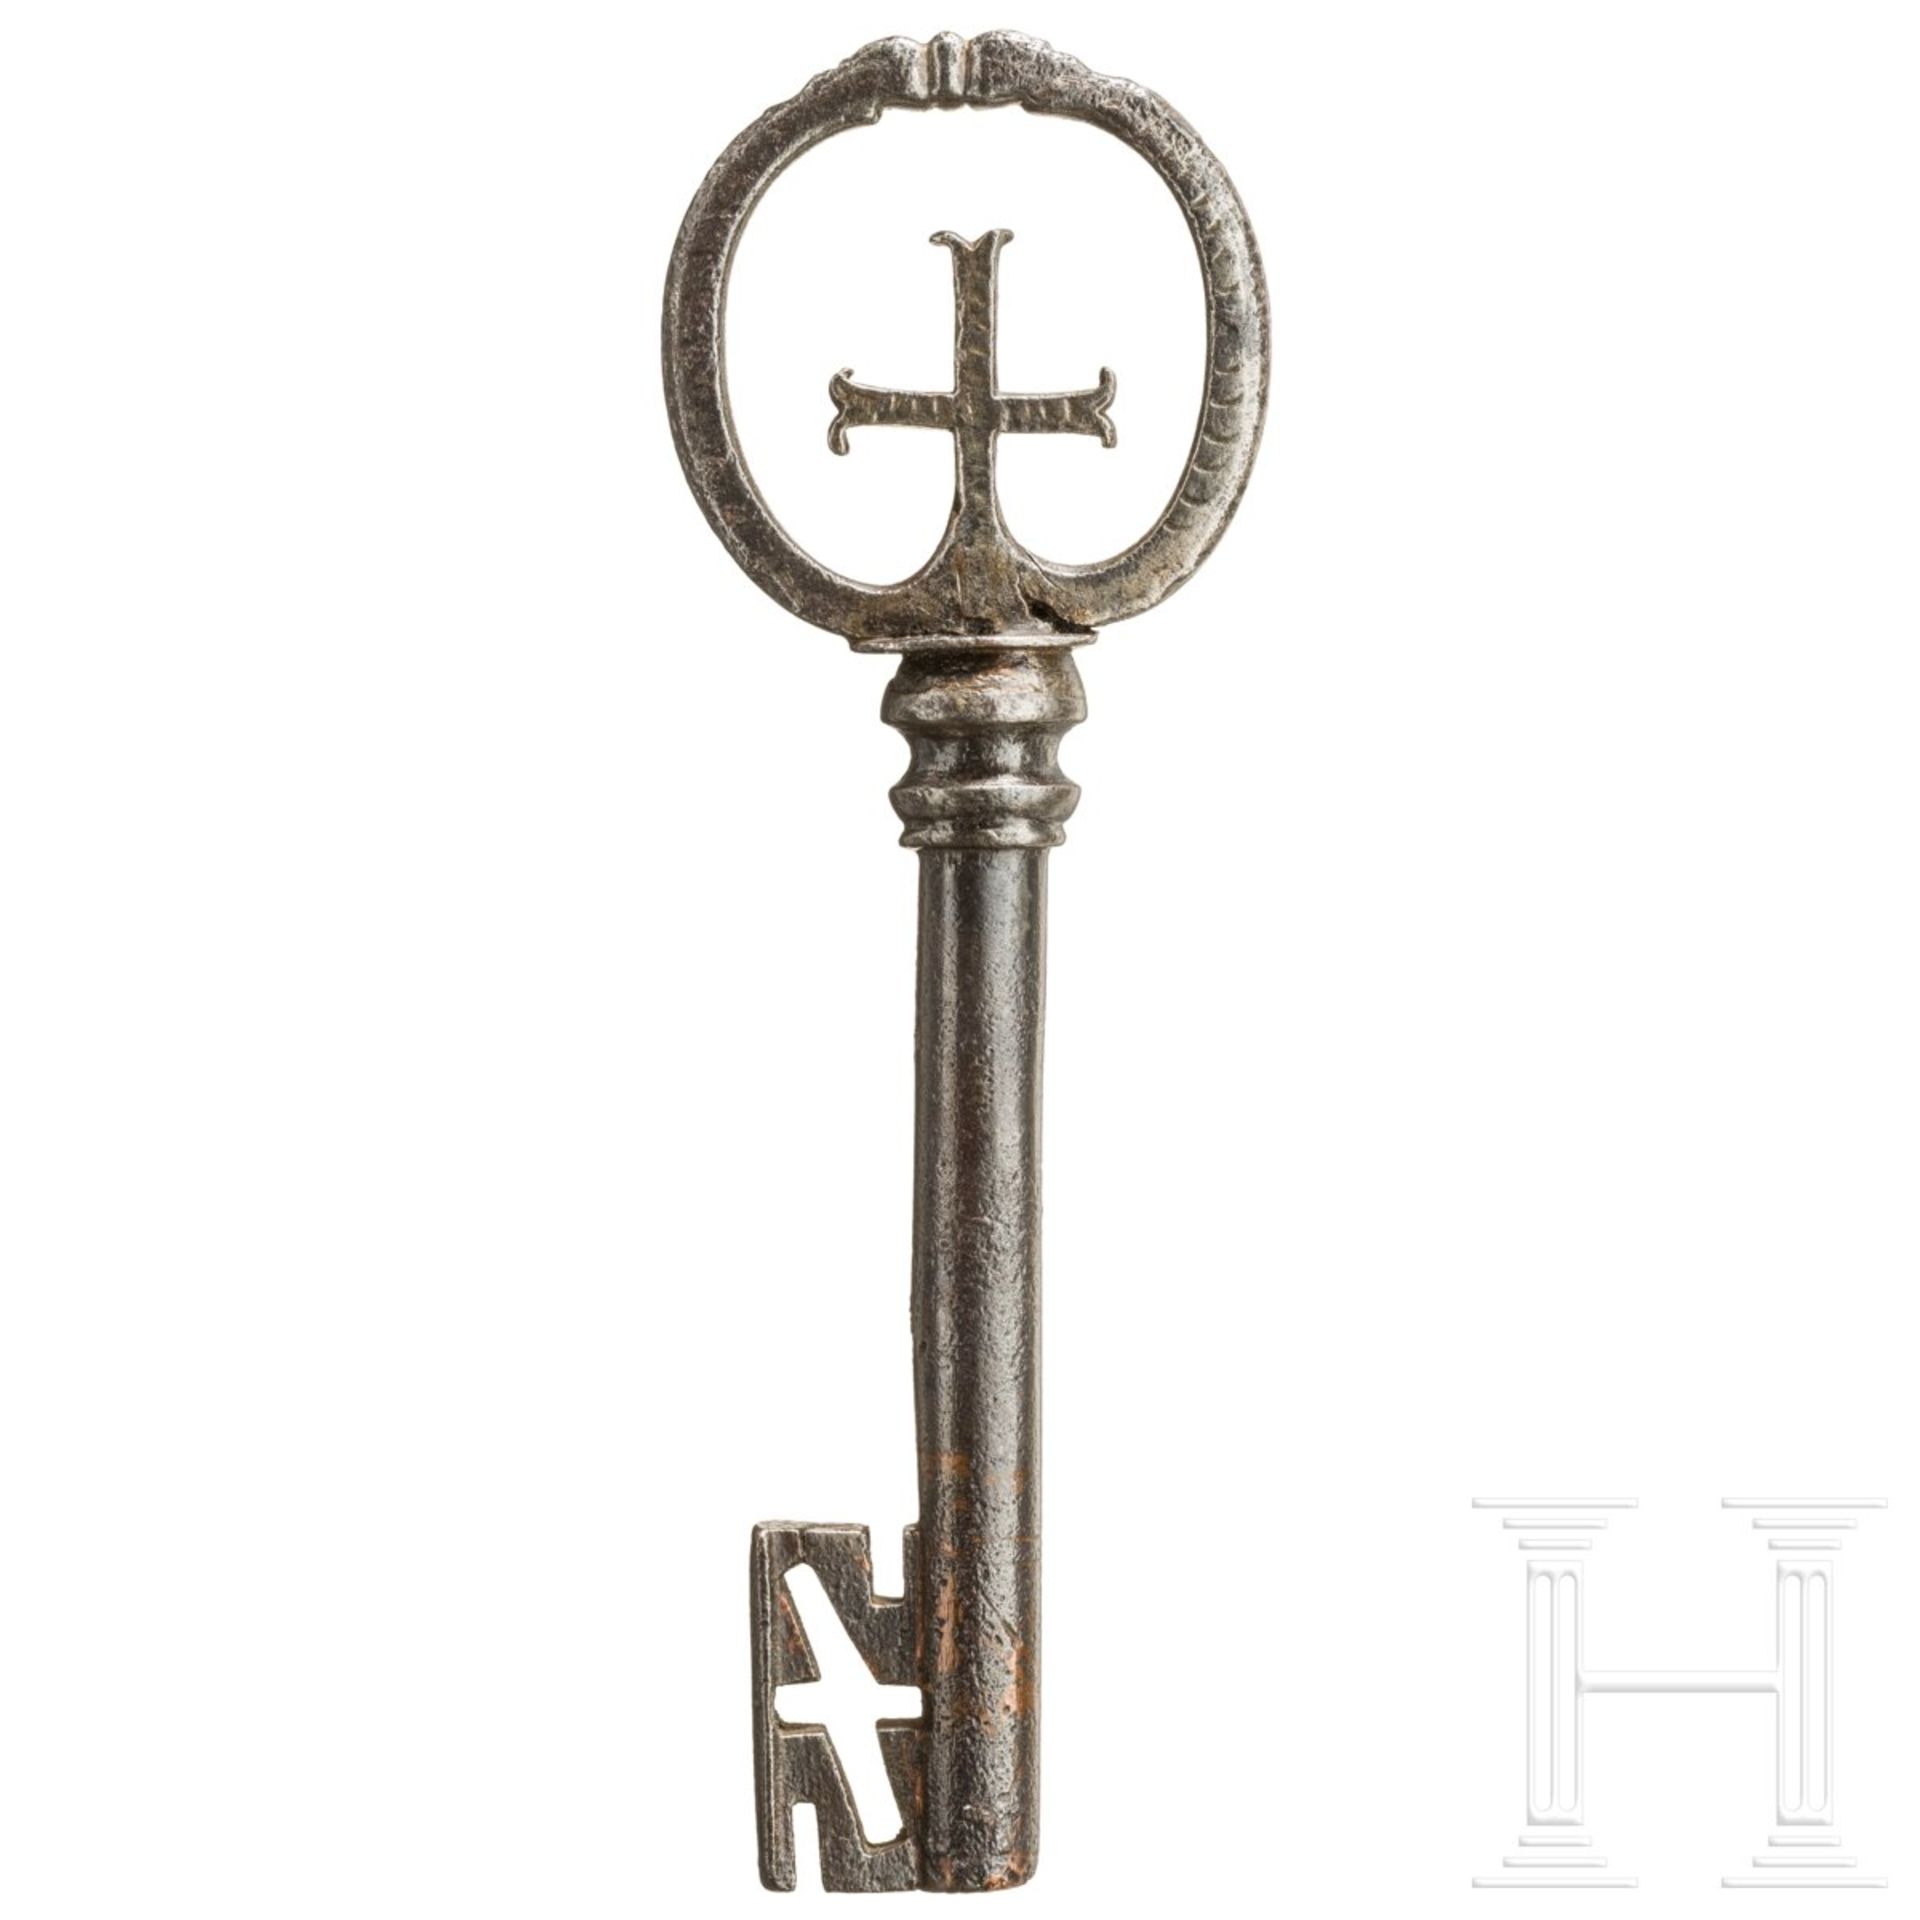 Barocker Hohldornschlüssel, süddeutsch, 17. Jhdt. - Bild 2 aus 3